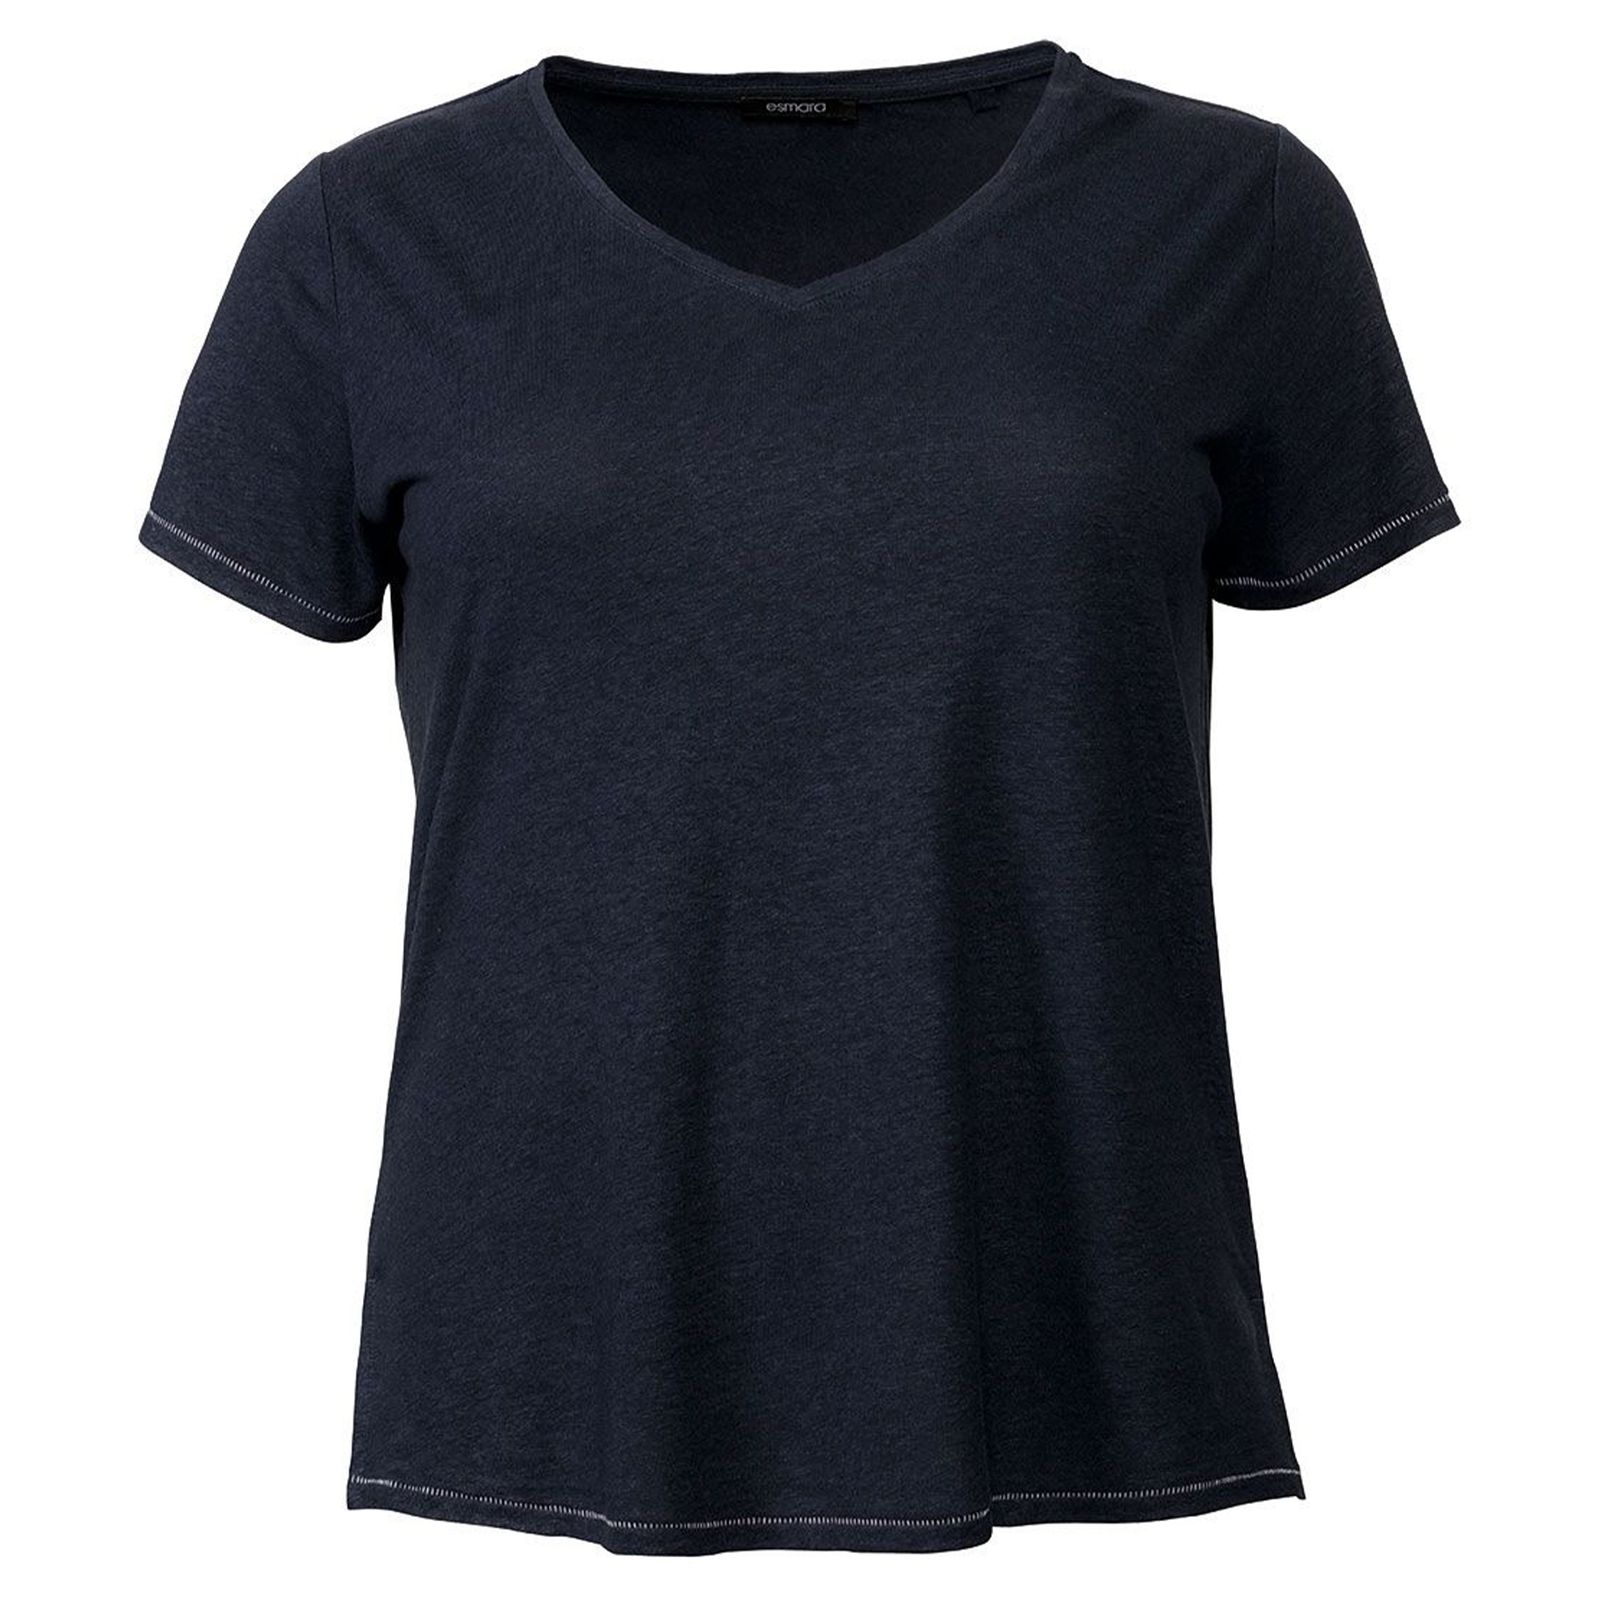 تی شرت آستین کوتاه زنانه اسمارا مدل 313237 رنگ سرمه ای -  - 1